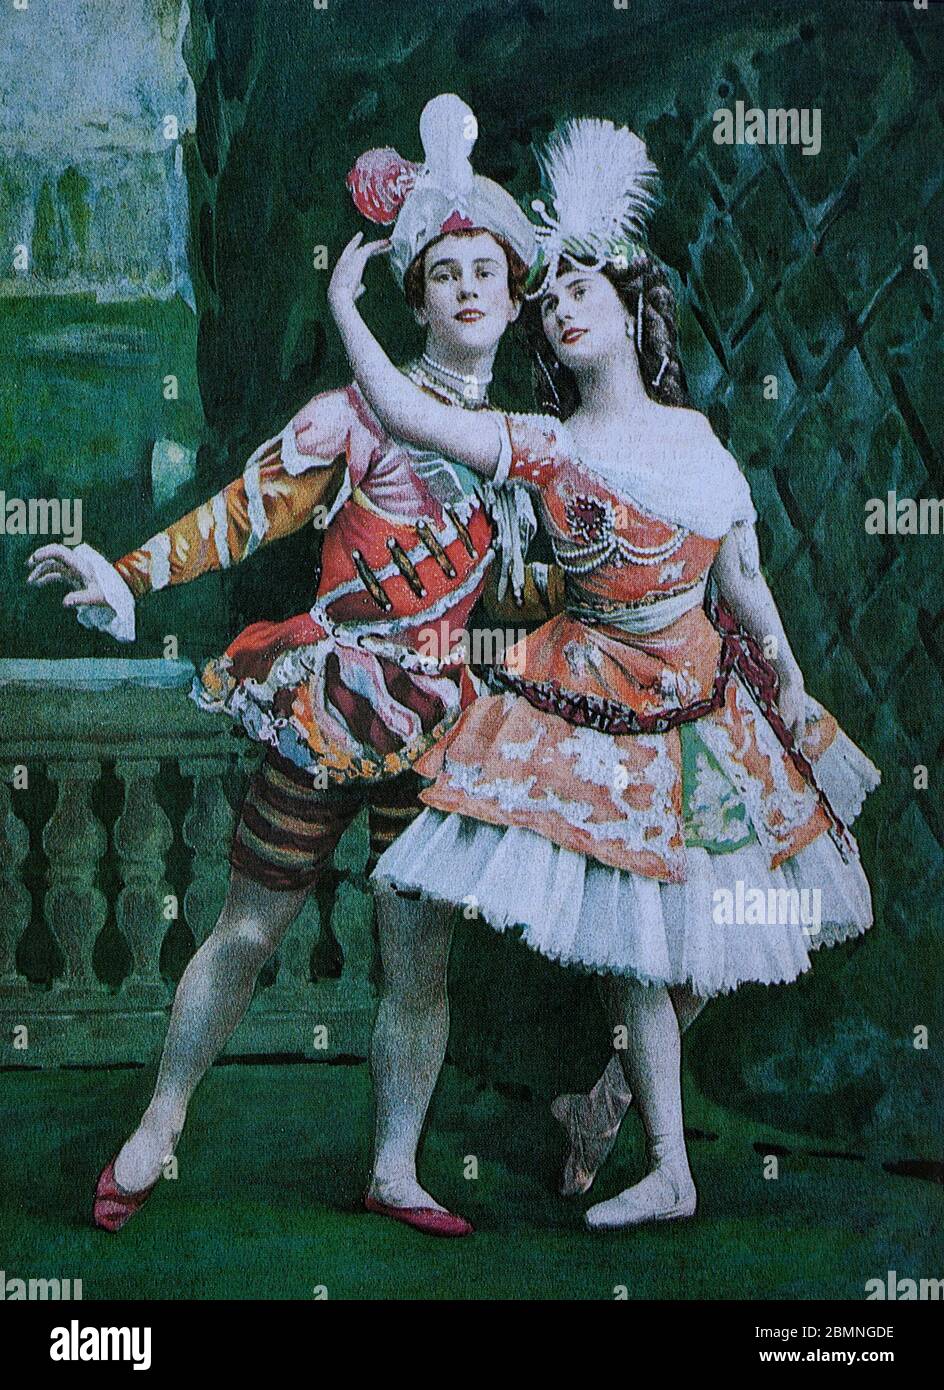 Russische Tänzer Vaslav Nijinsky (1889-1950), Balletttänzer und Choreograf, die als die größte männliche Tänzerin des frühen 20. Jahrhunderts und Anna Pavlova (1881-1931), eine russische Prima Ballerina des späten 19. Und frühen 20. Jahrhunderts. Aus der französischen Zeitung 'Le Theatre', vom 1. Mai 1909. Stockfoto